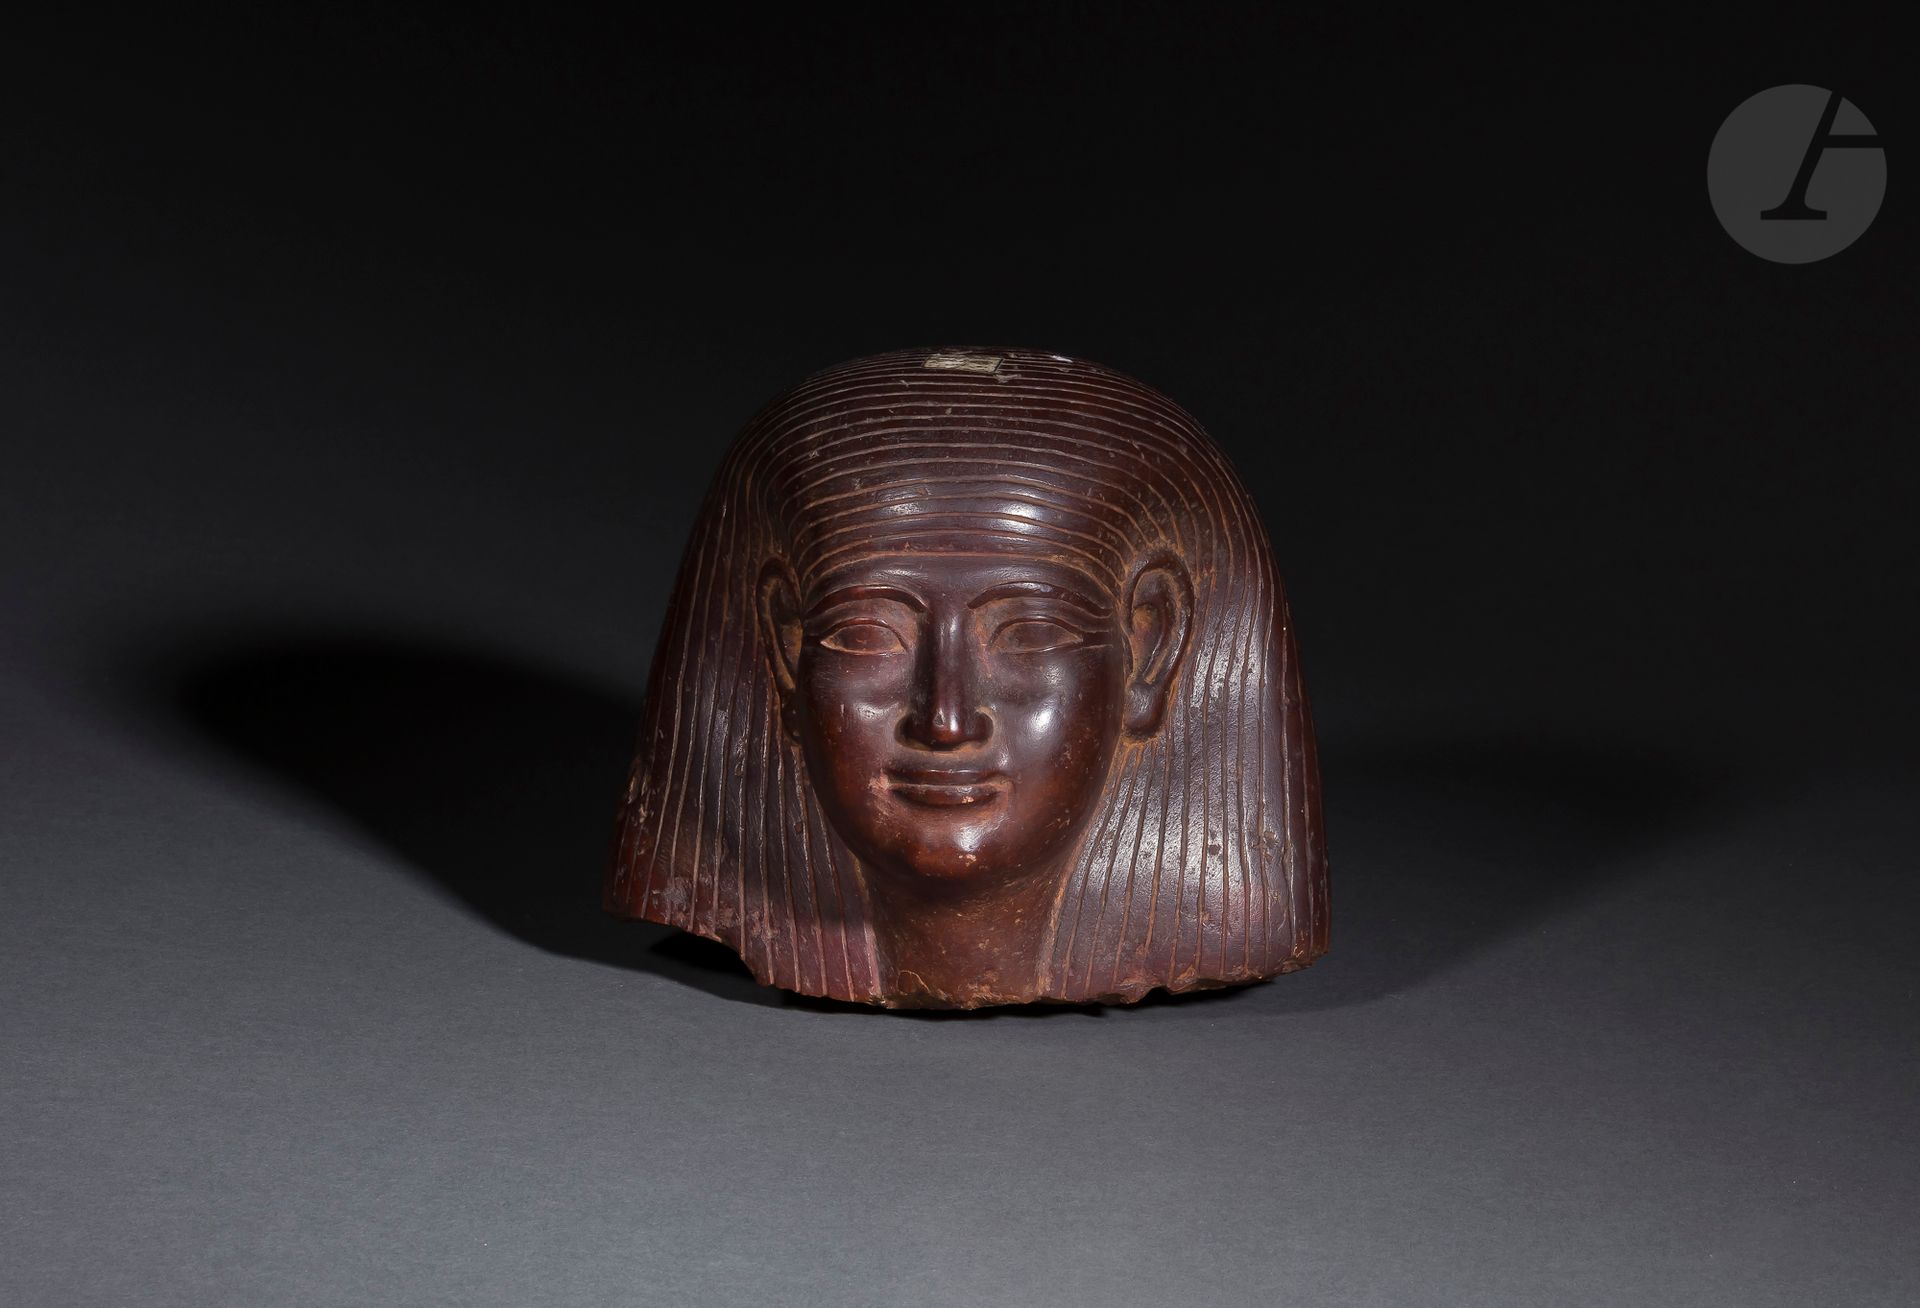 Null 头部有三方假发
埃及红石。
埃及风格，可能是20世纪初。
高度：19厘米

埃及风格的石雕头像，带着三层假发，可能是20世纪初的作品